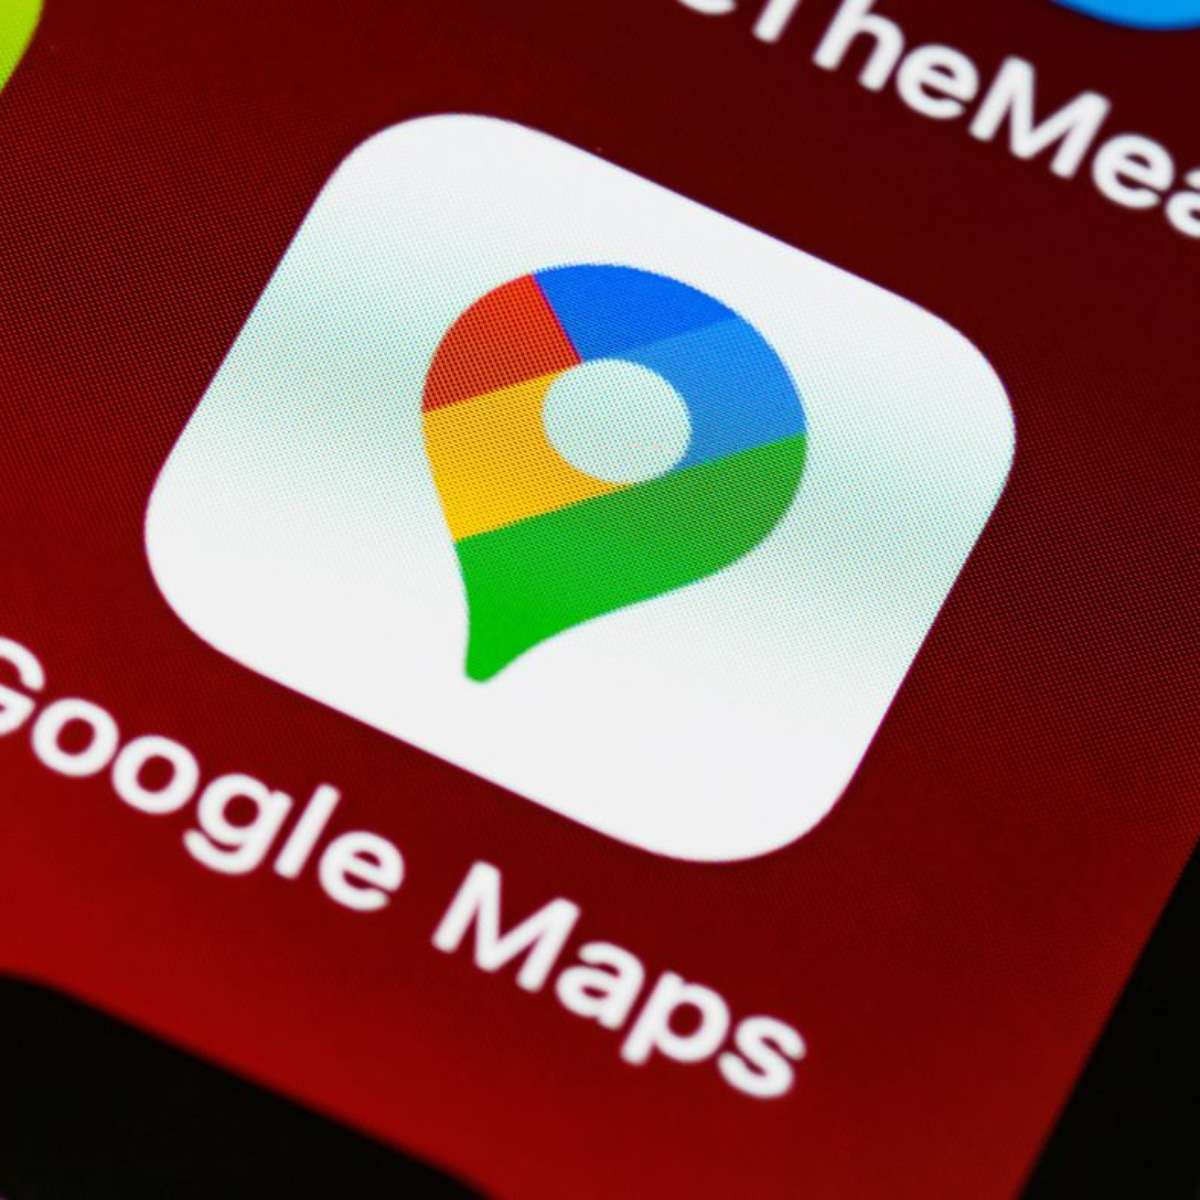 Google lança jogo de perguntas usando Google Maps - Canaltech